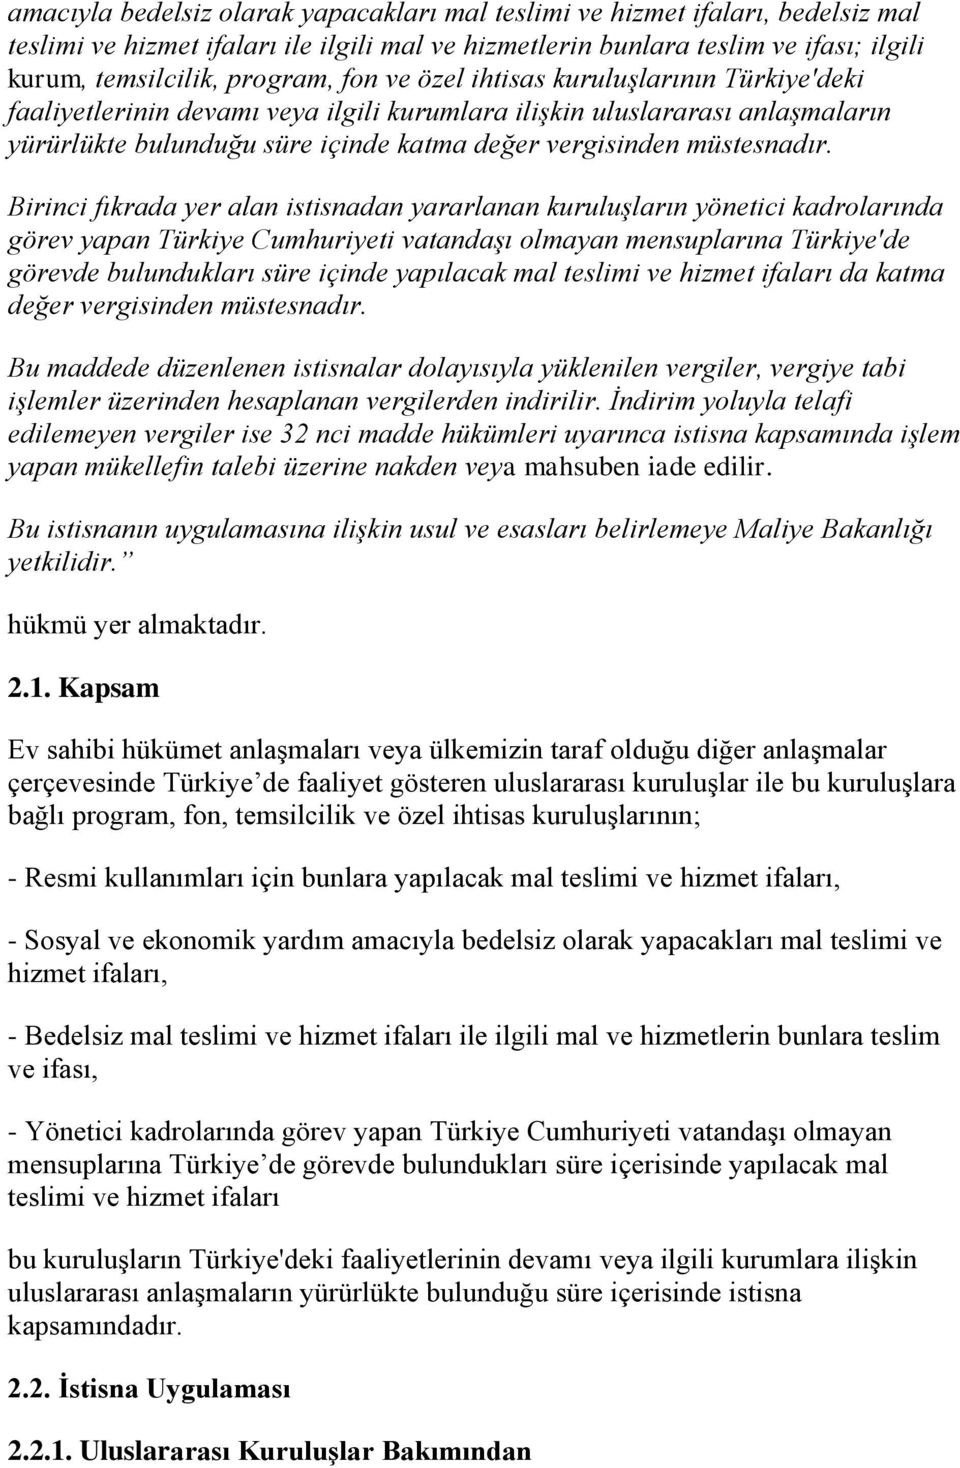 Birinci fıkrada yer alan istisnadan yararlanan kuruluşların yönetici kadrolarında görev yapan Türkiye Cumhuriyeti vatandaşı olmayan mensuplarına Türkiye'de görevde bulundukları süre içinde yapılacak